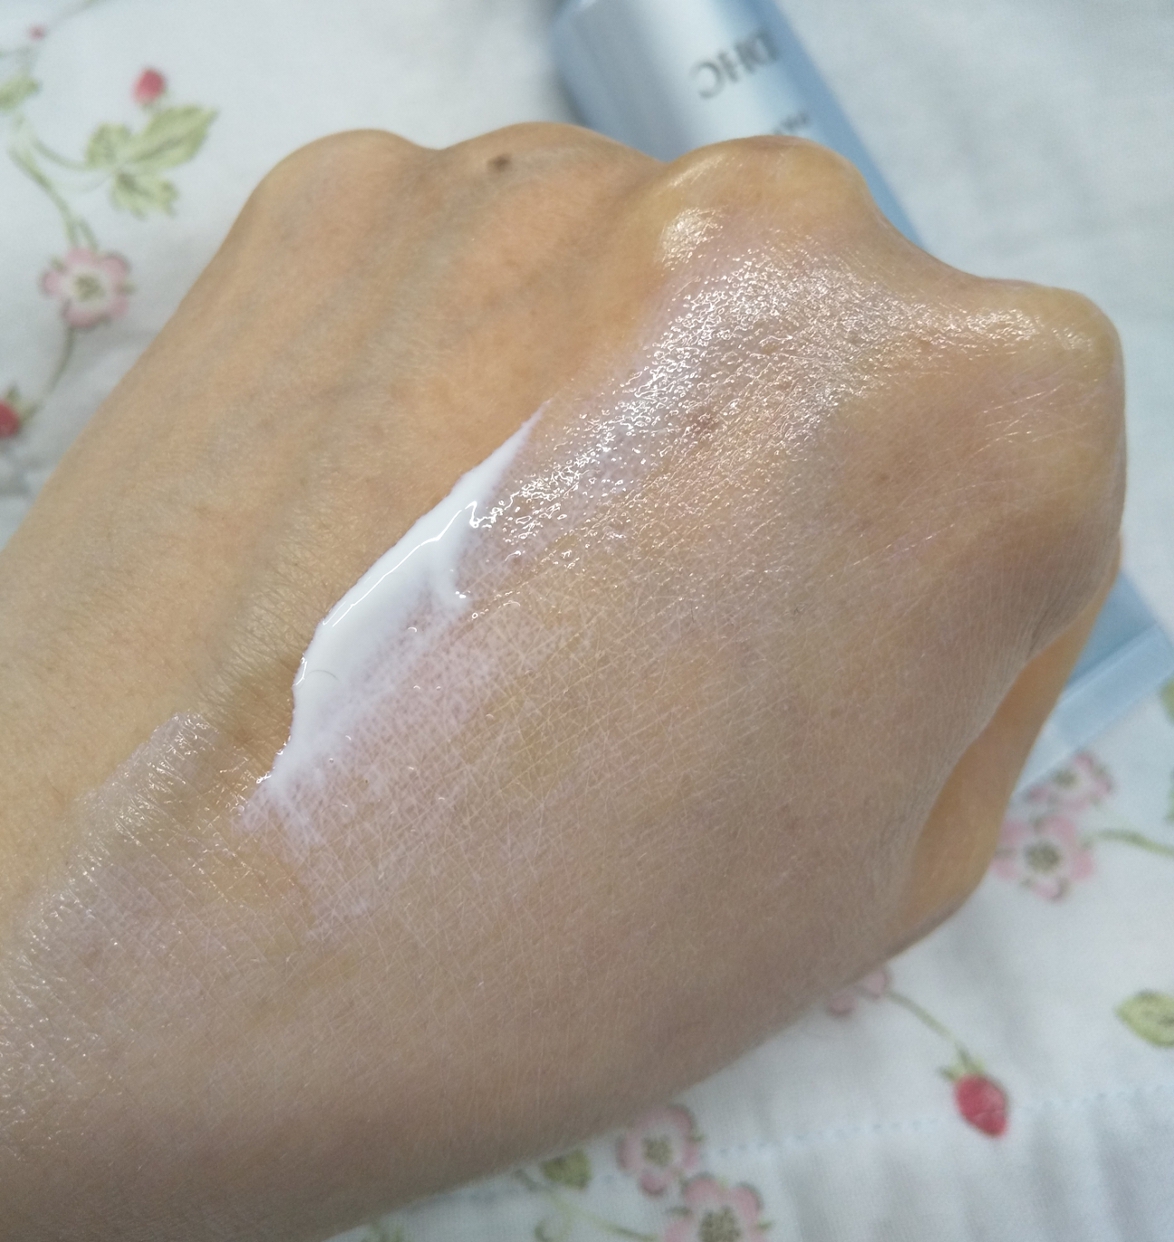 DHC(ディーエイチシー) 薬用ホワイトニングセラム UVを使ったカサブランカさんのクチコミ画像2